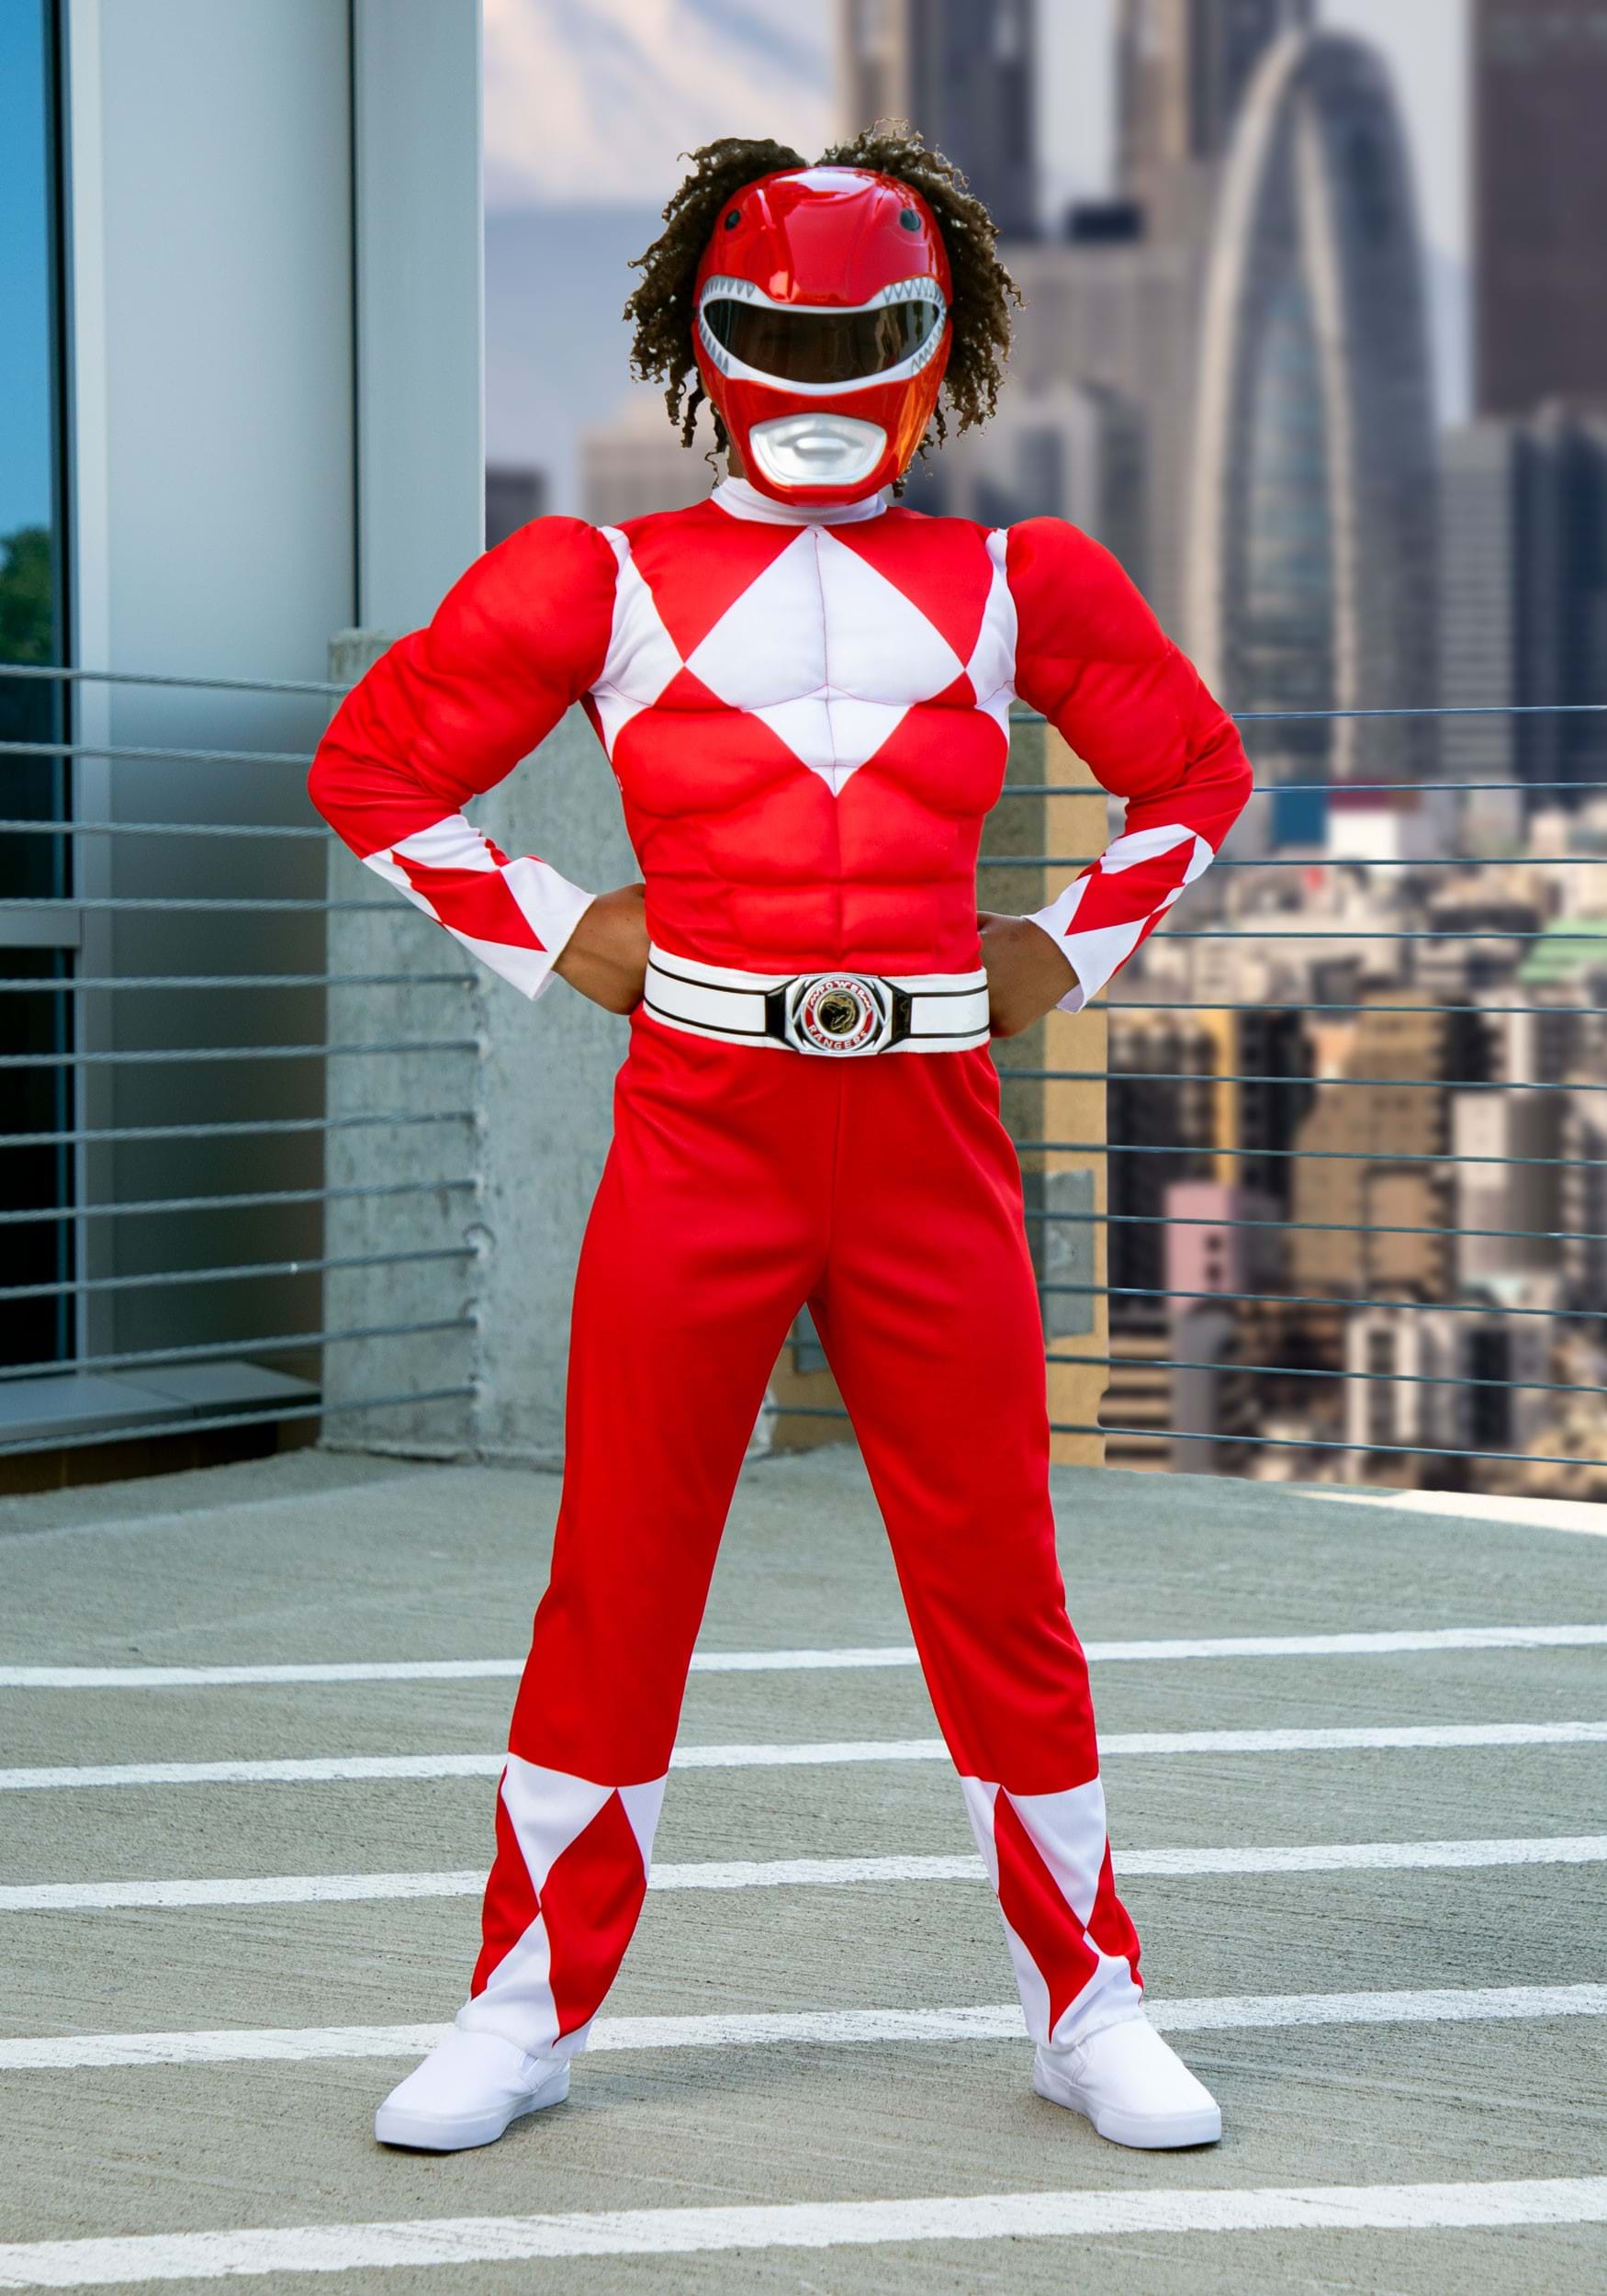 Power Rangers Red Ranger Costume For Boys